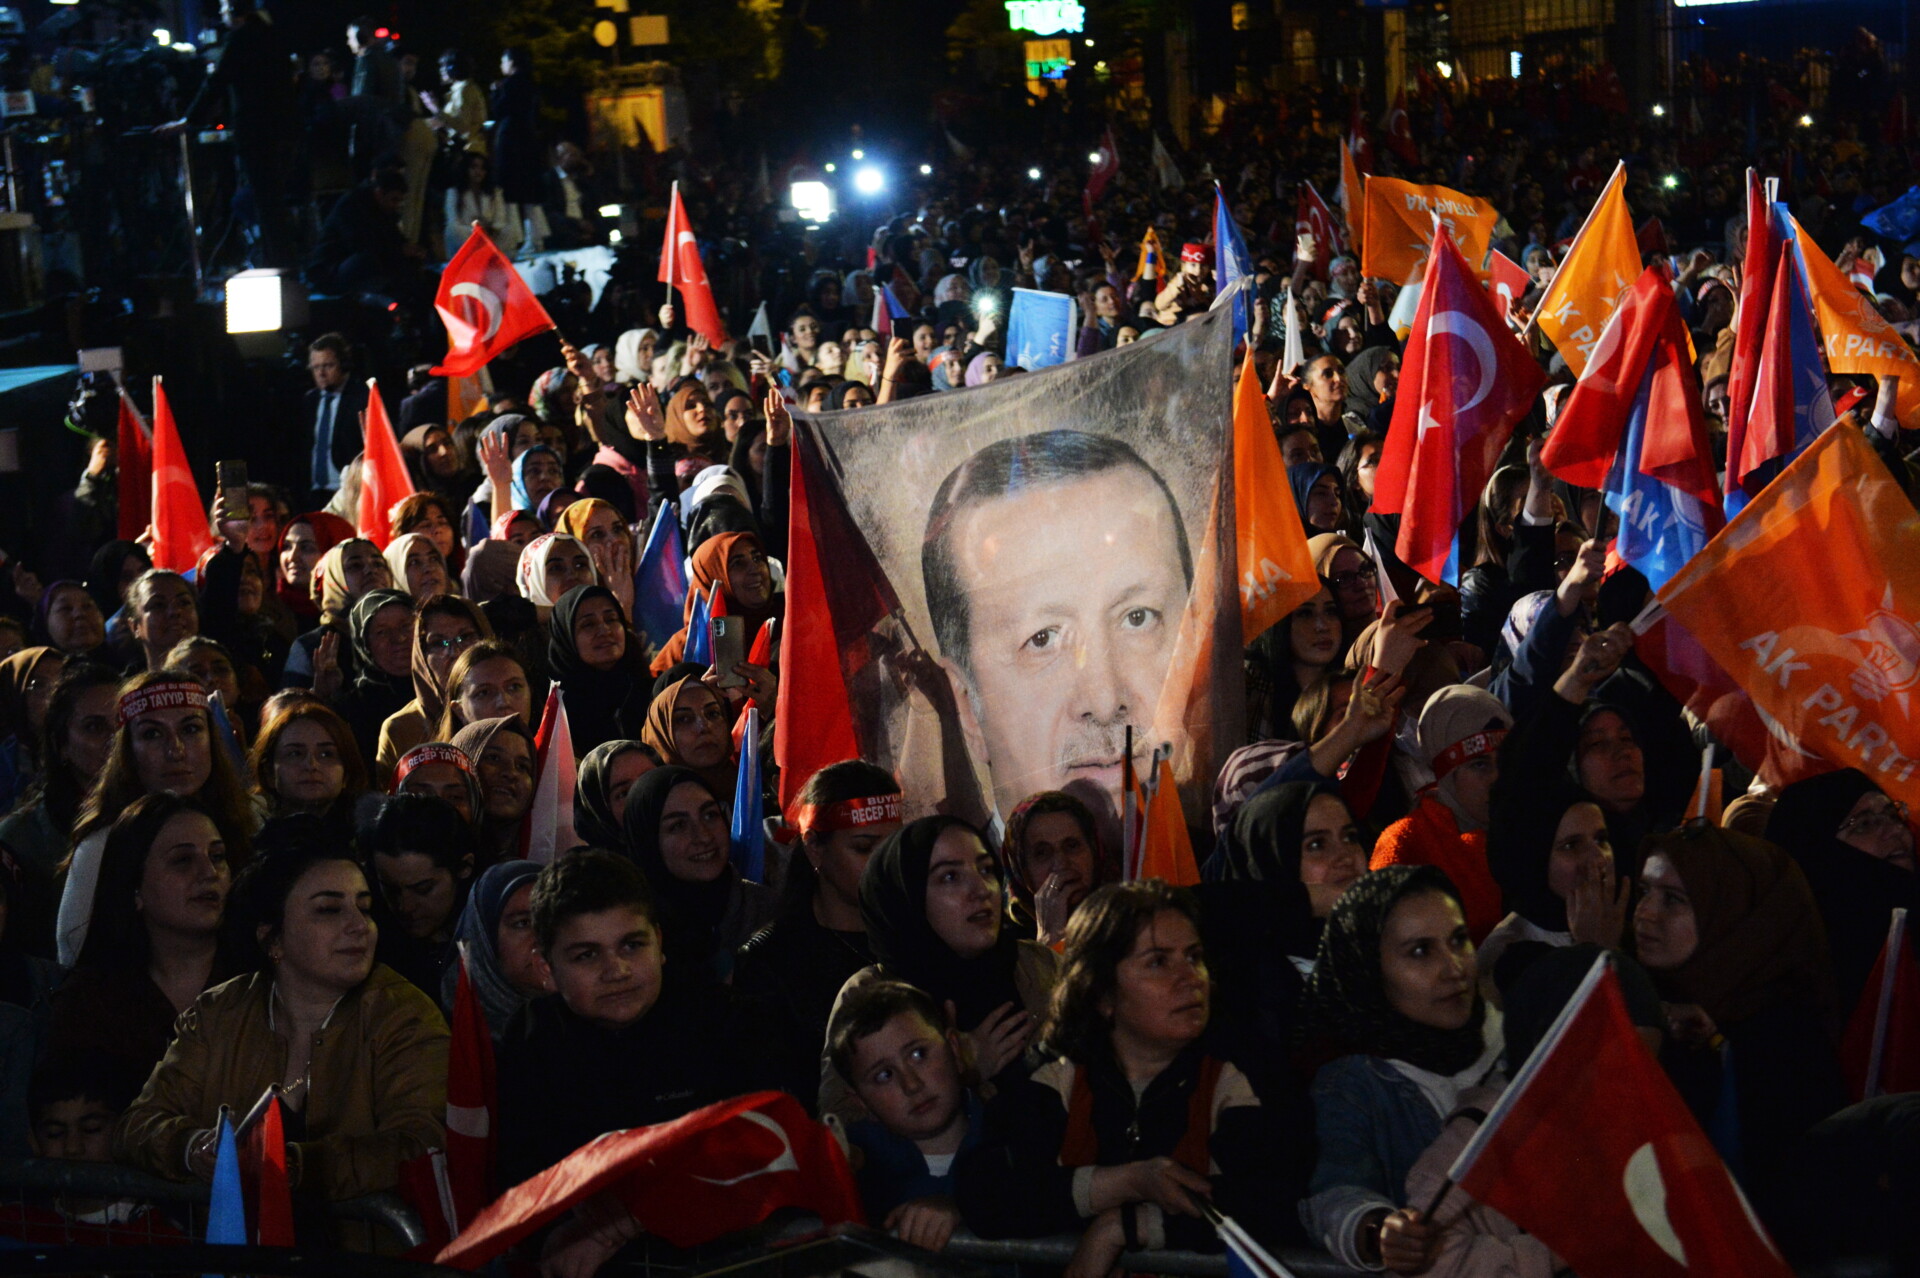 Υποστηρικτές του Ερντογάν τον αποθεώνουν μετά τις εκλογές στην Τουρκία © EPA/Necati Savas